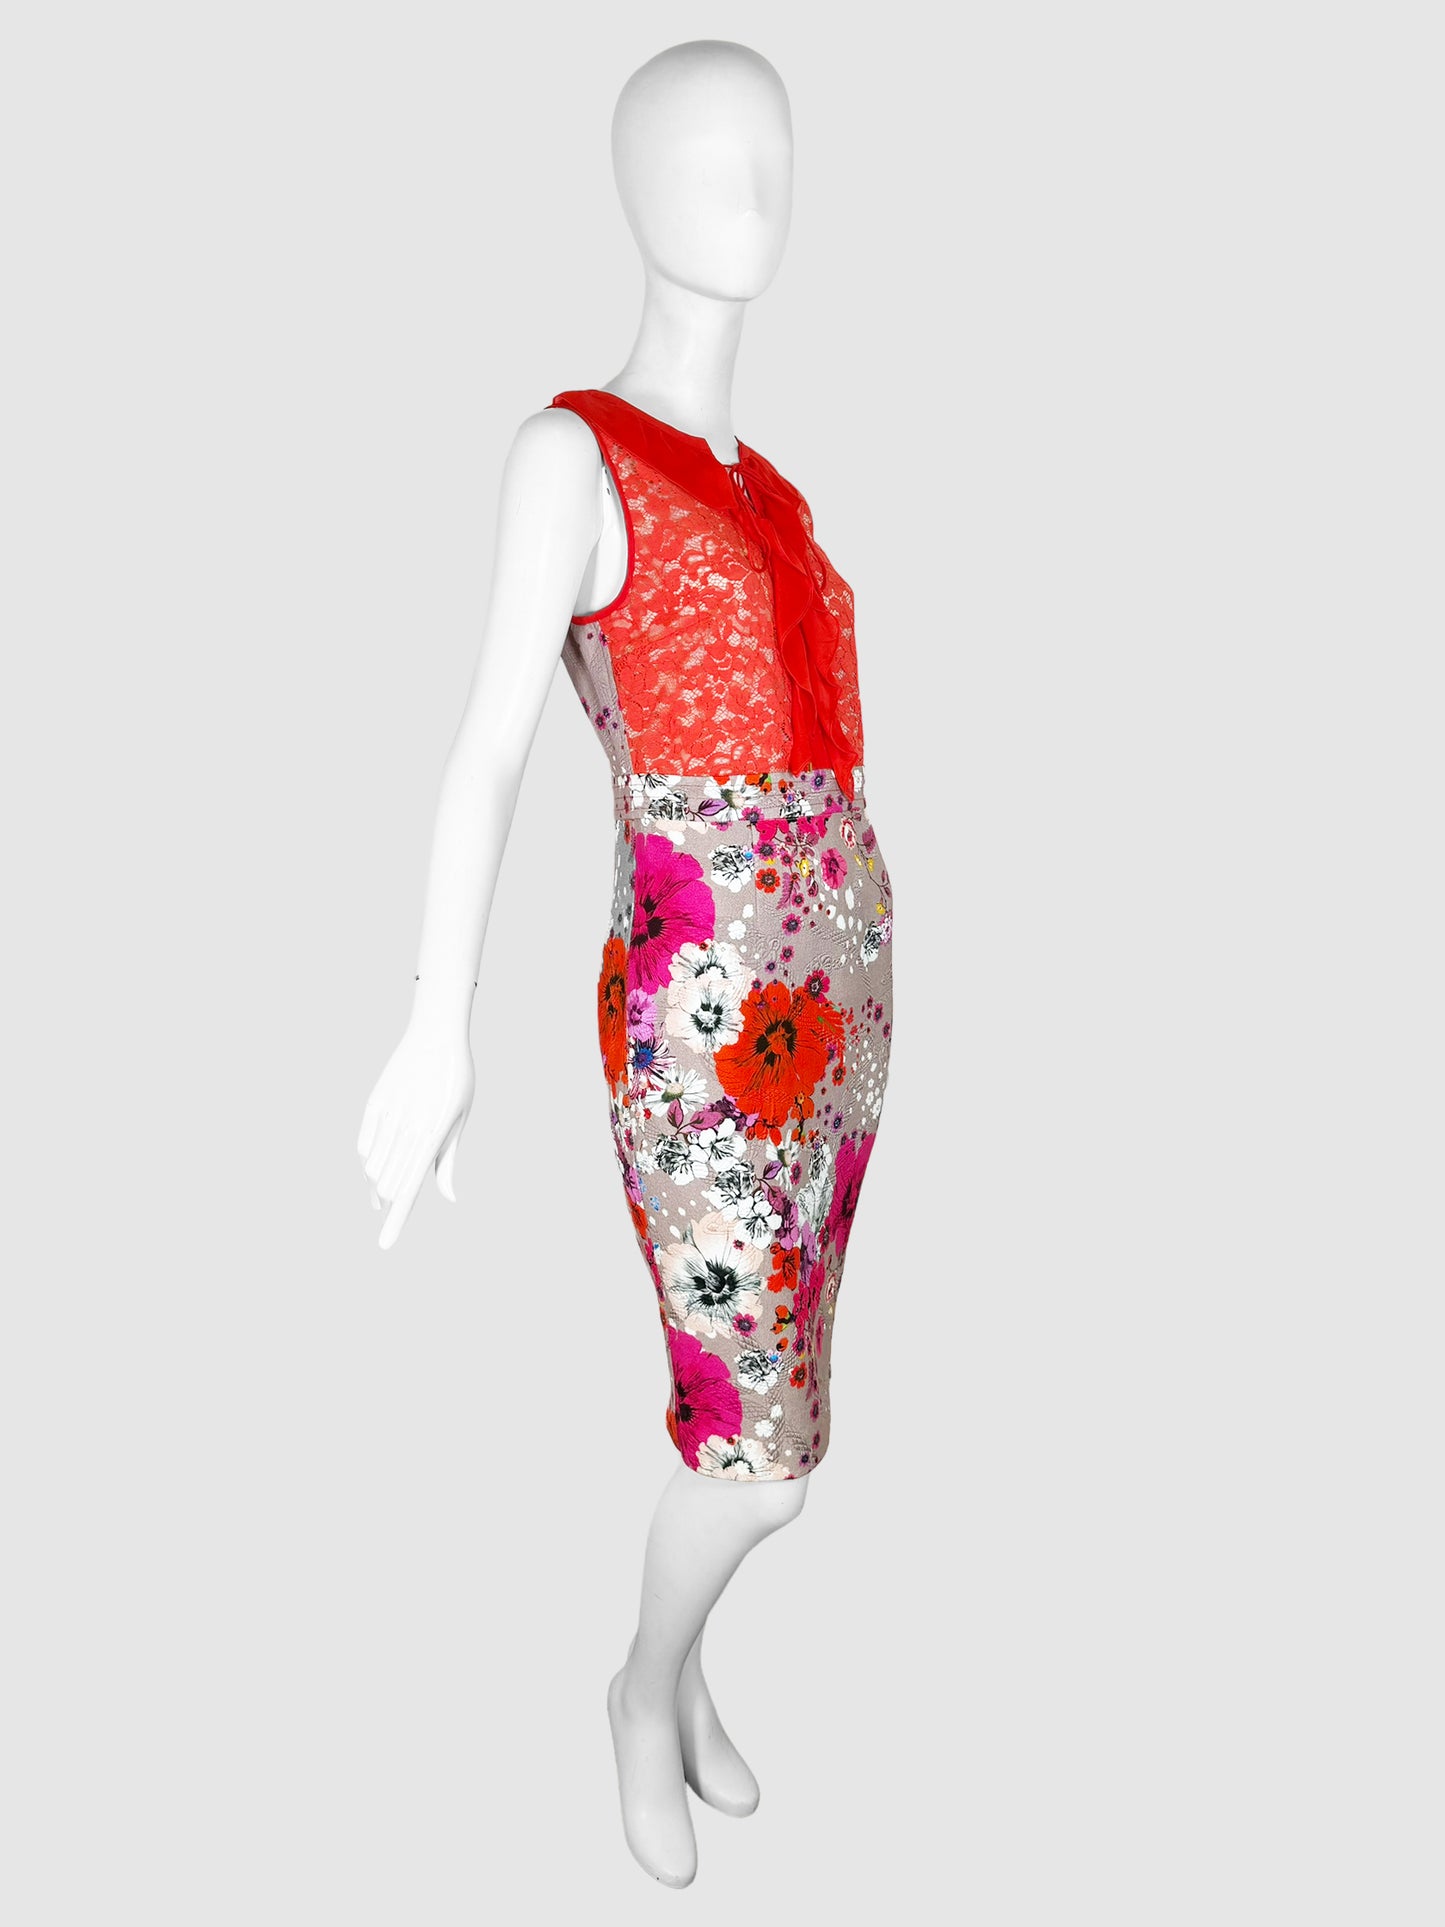 Lace Floral Print Dress - Size 6/8